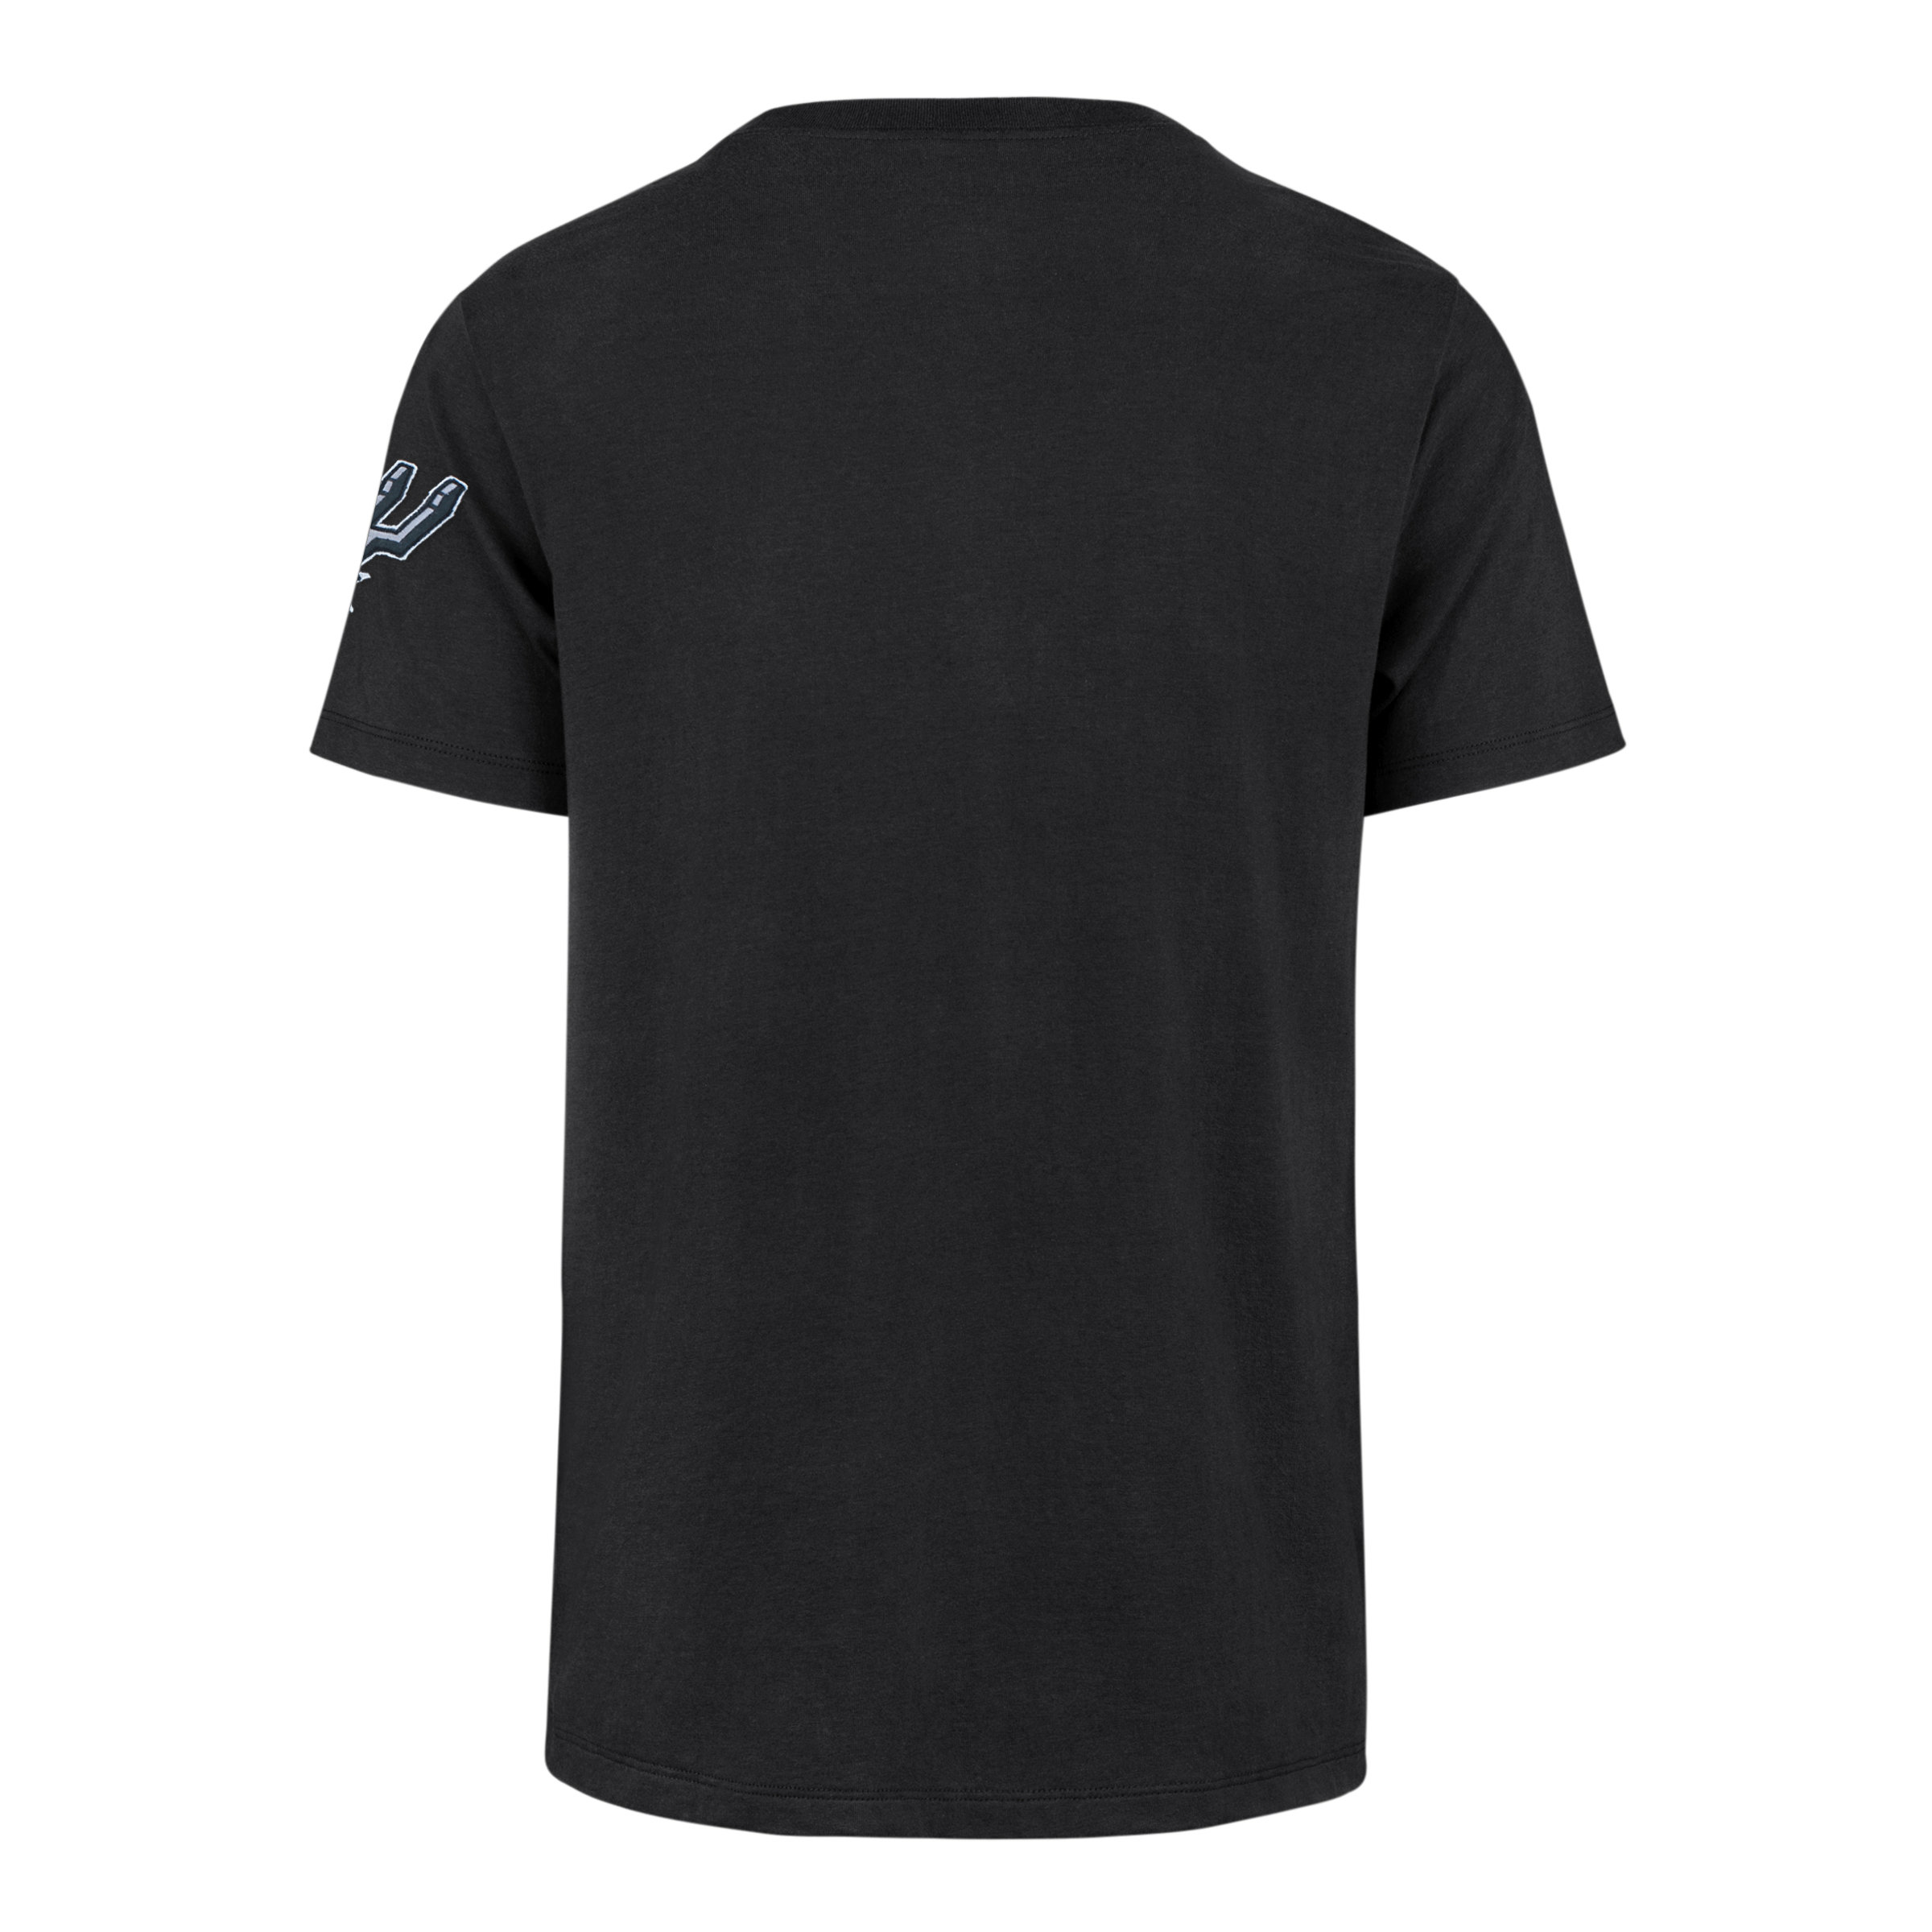 San Antonio Spurs Men's '47 Brand Franklin Field House T-Shirt - Black -  The Official Spurs Fan Shop